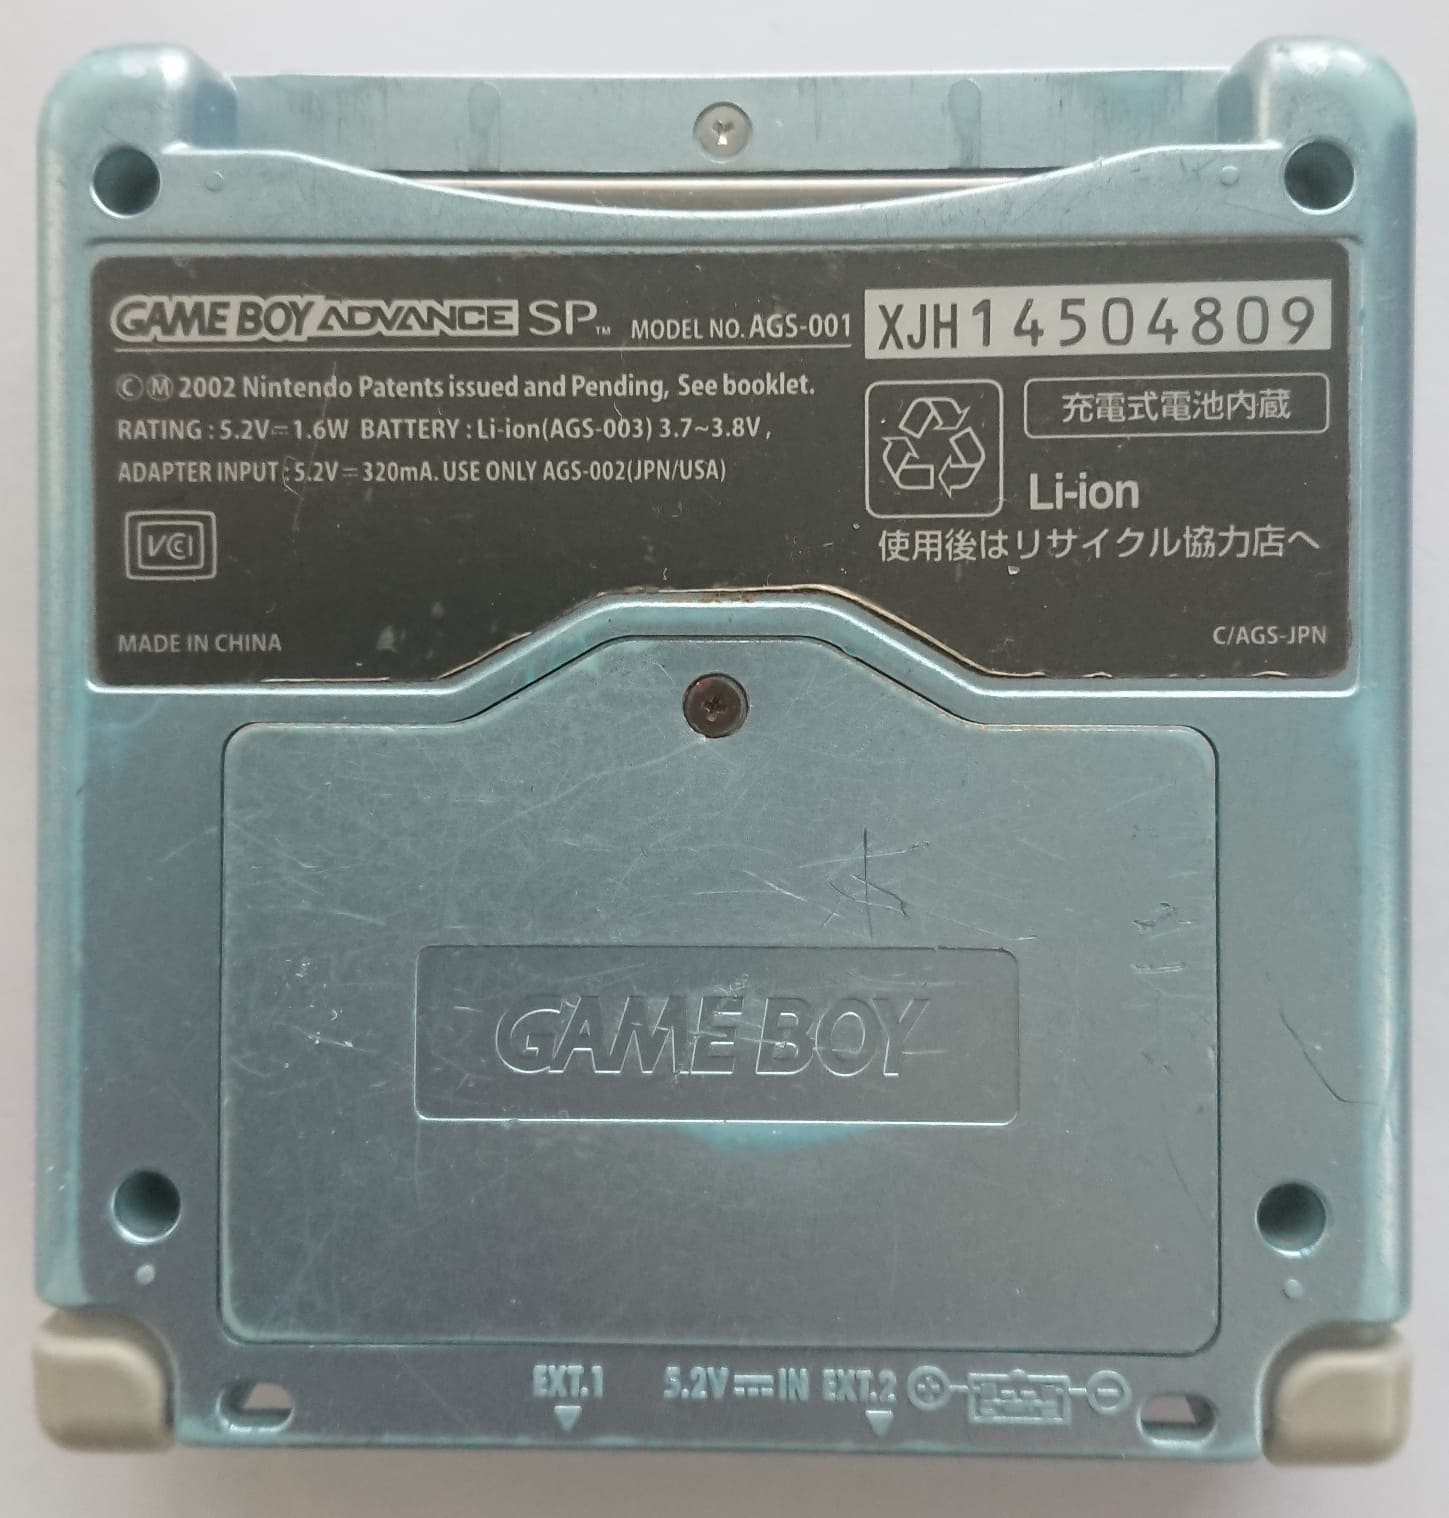 AGS: XJH14504809 [gekkio] - Game Boy hardware database